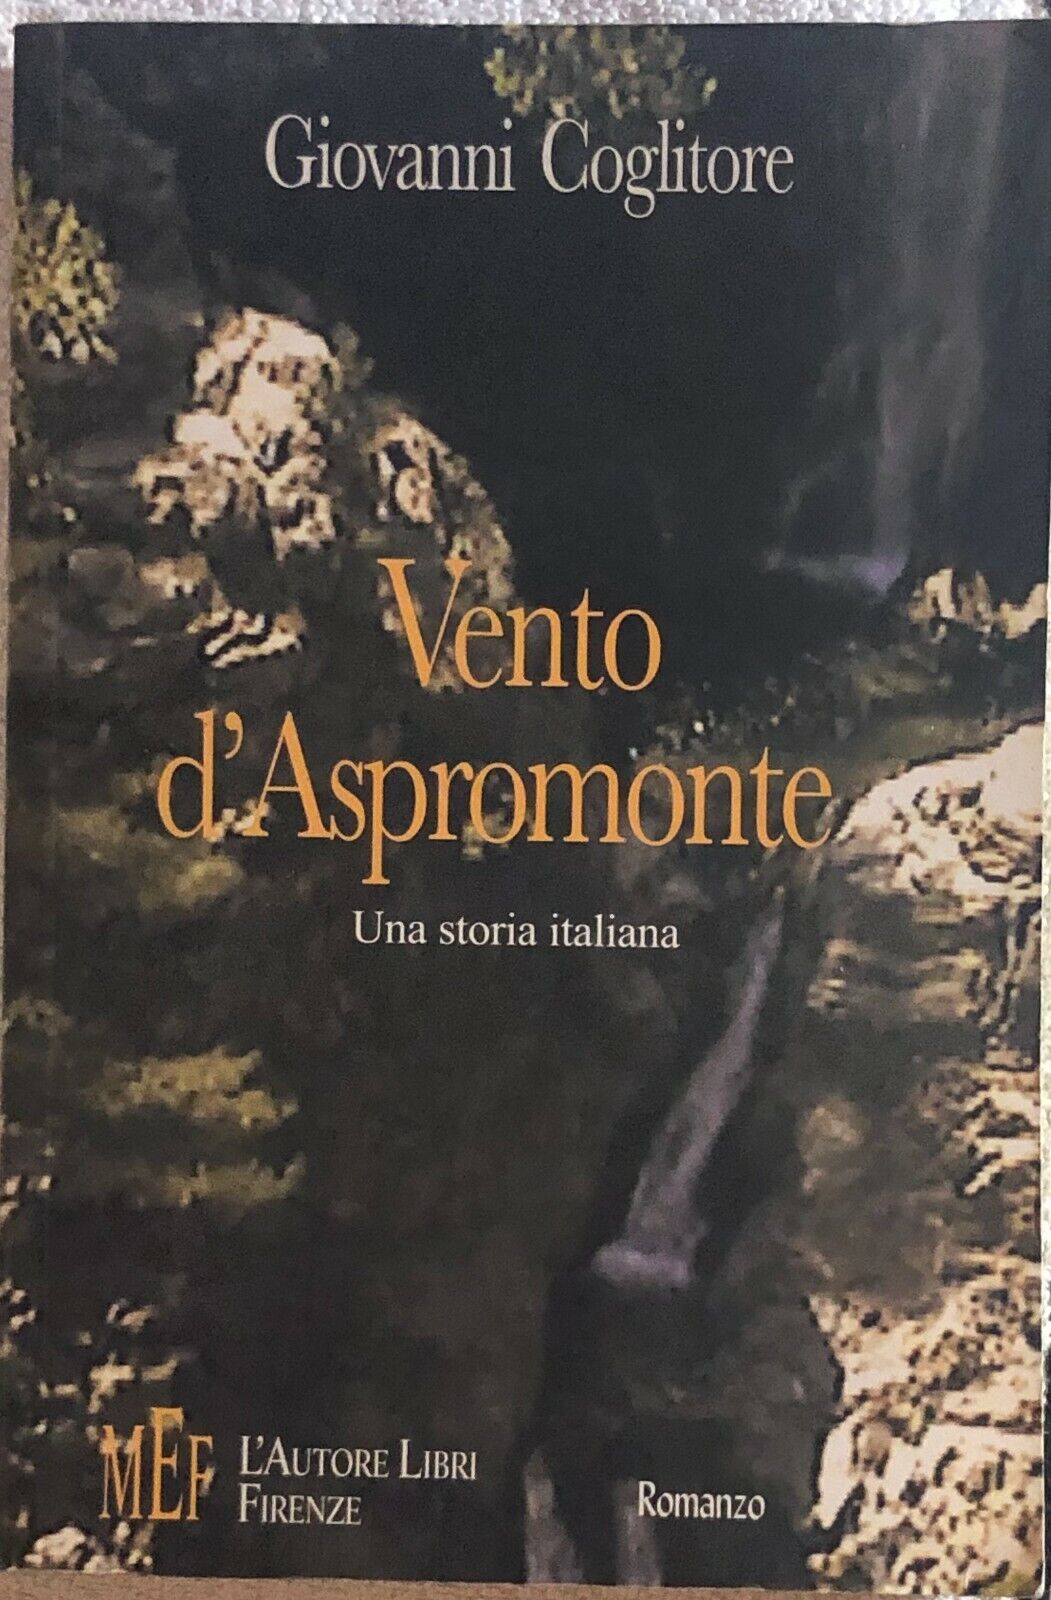 Vento d'Aspromonte di Giovanni Coglitore,  2006,  Mef